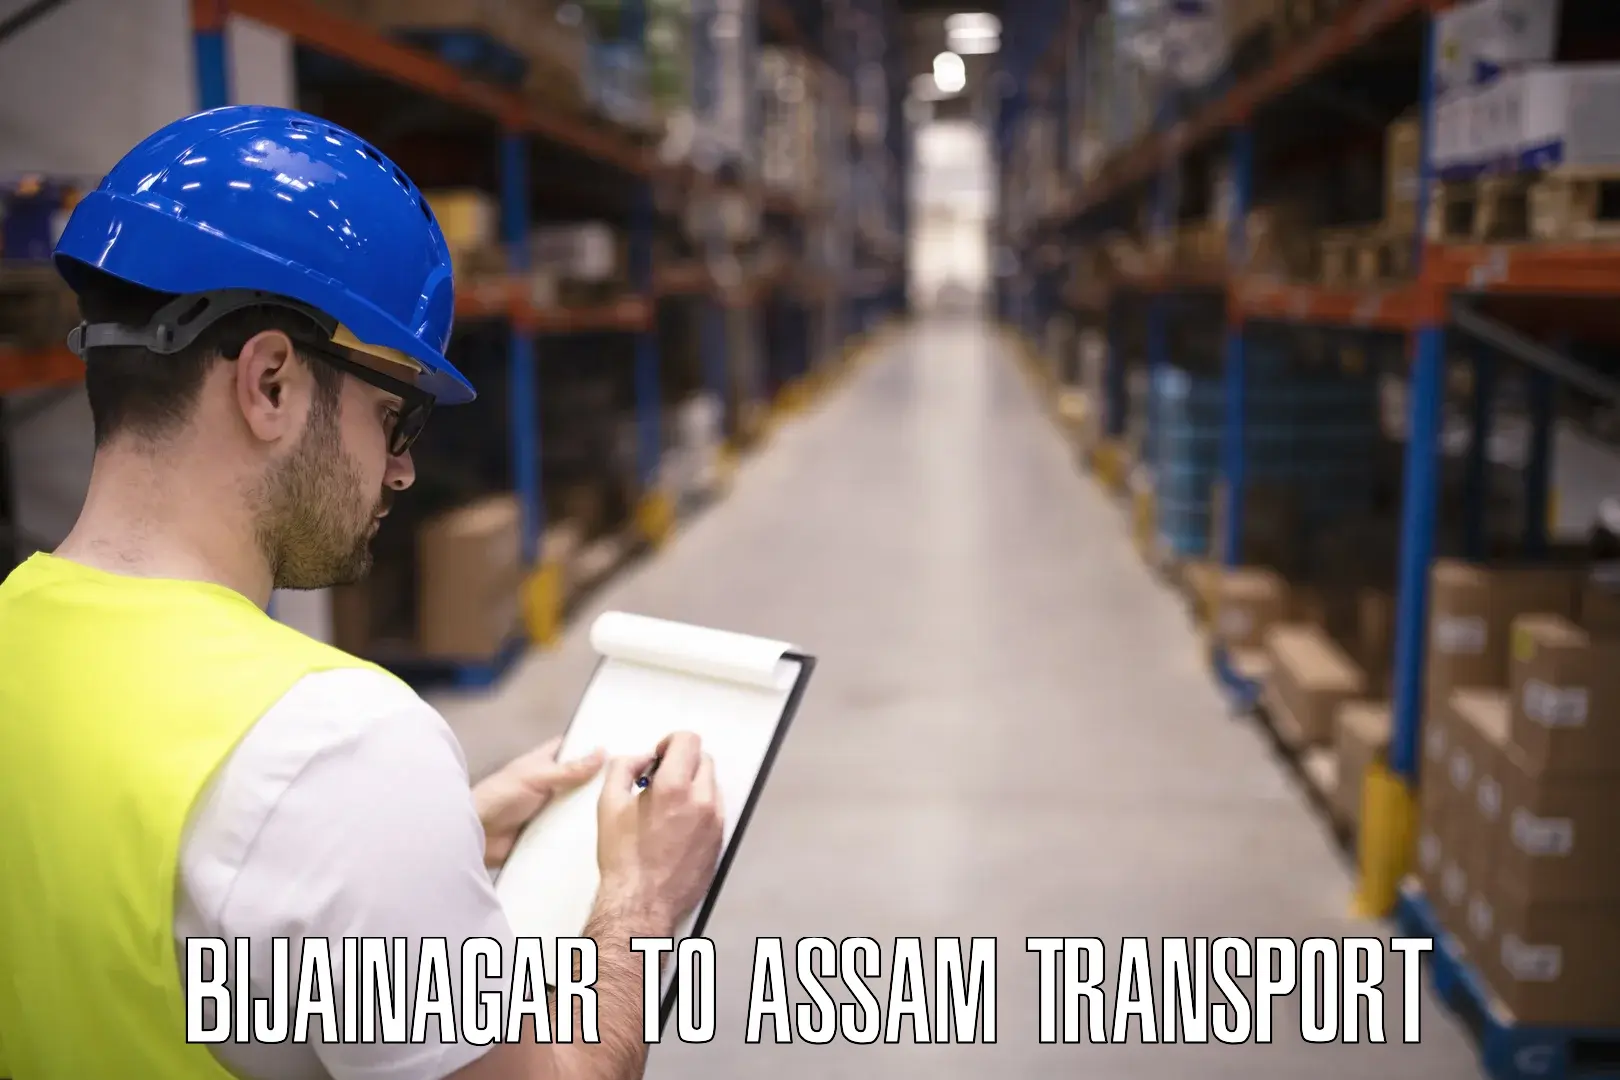 Transport shared services Bijainagar to Assam